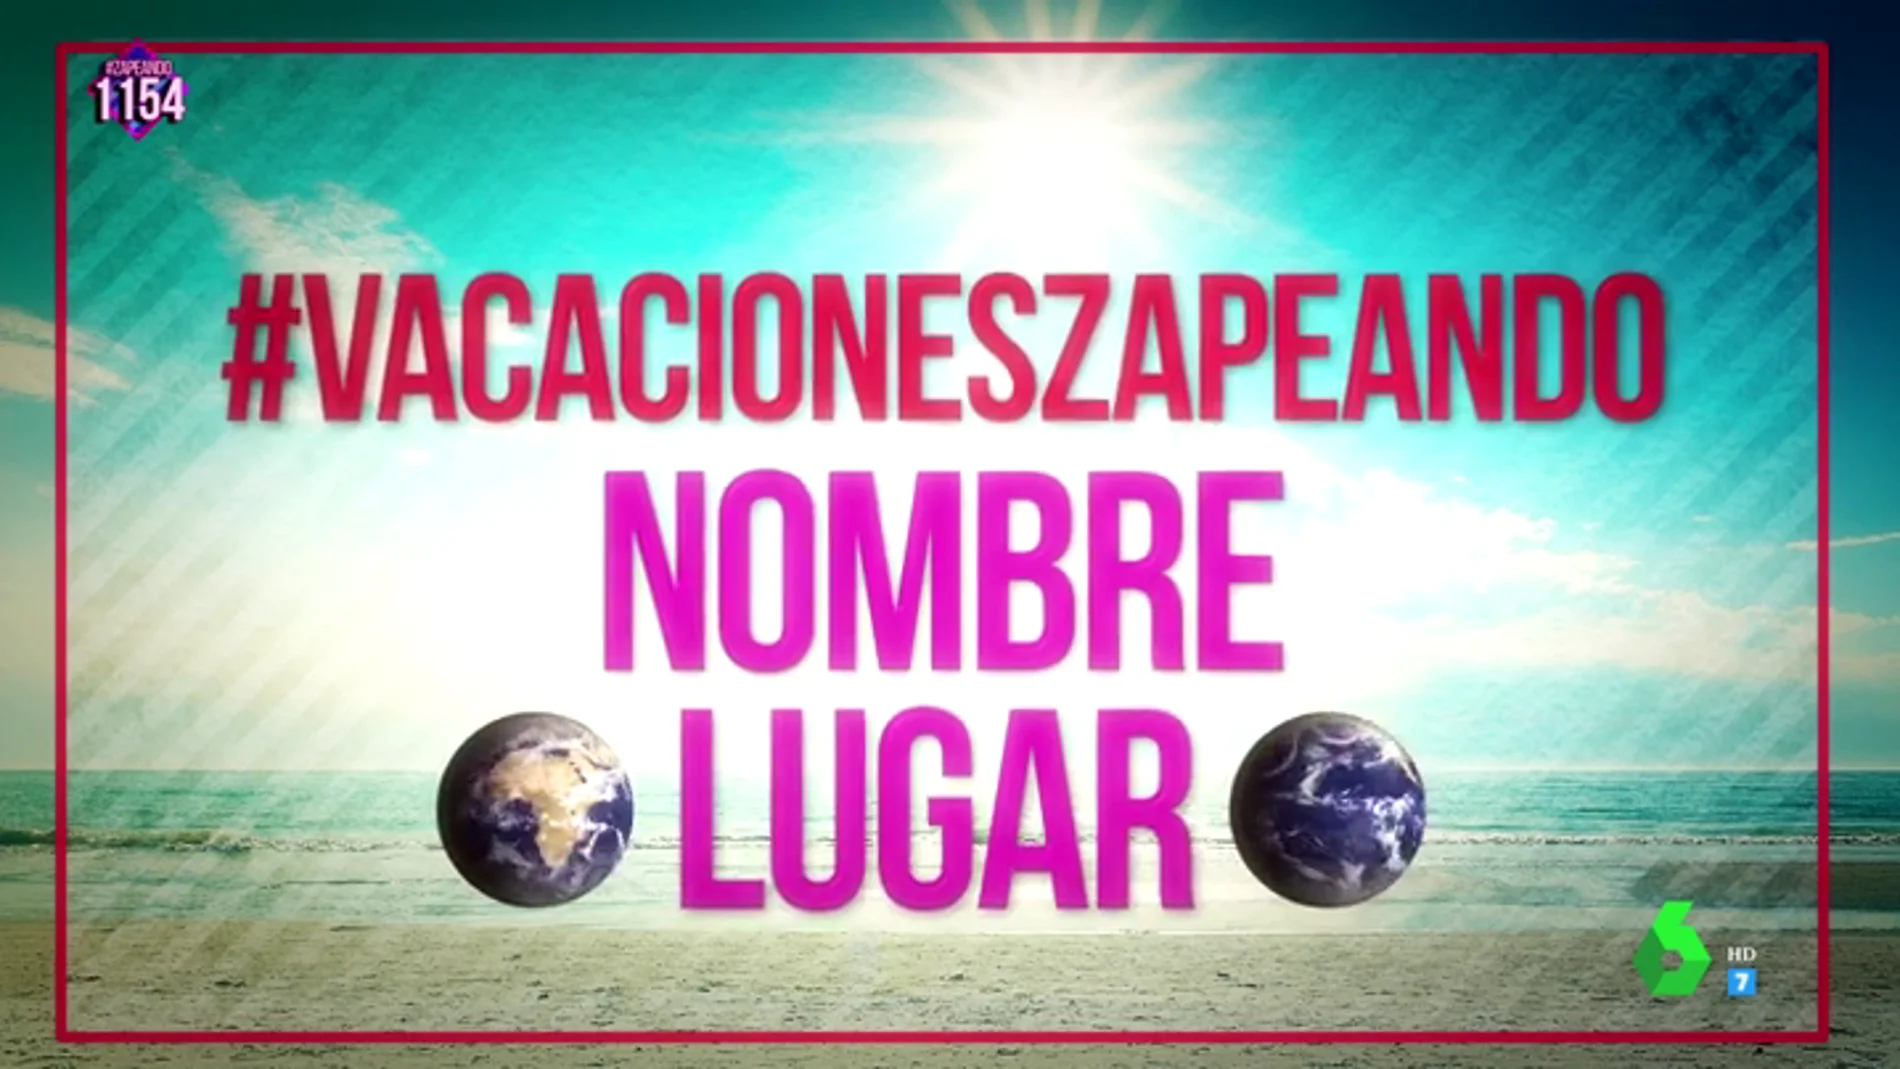 ¡Grábate disfrutando de tus vacaciones con un videoselfie y aparece en el espectacular videoclip del verano de Zapeando!